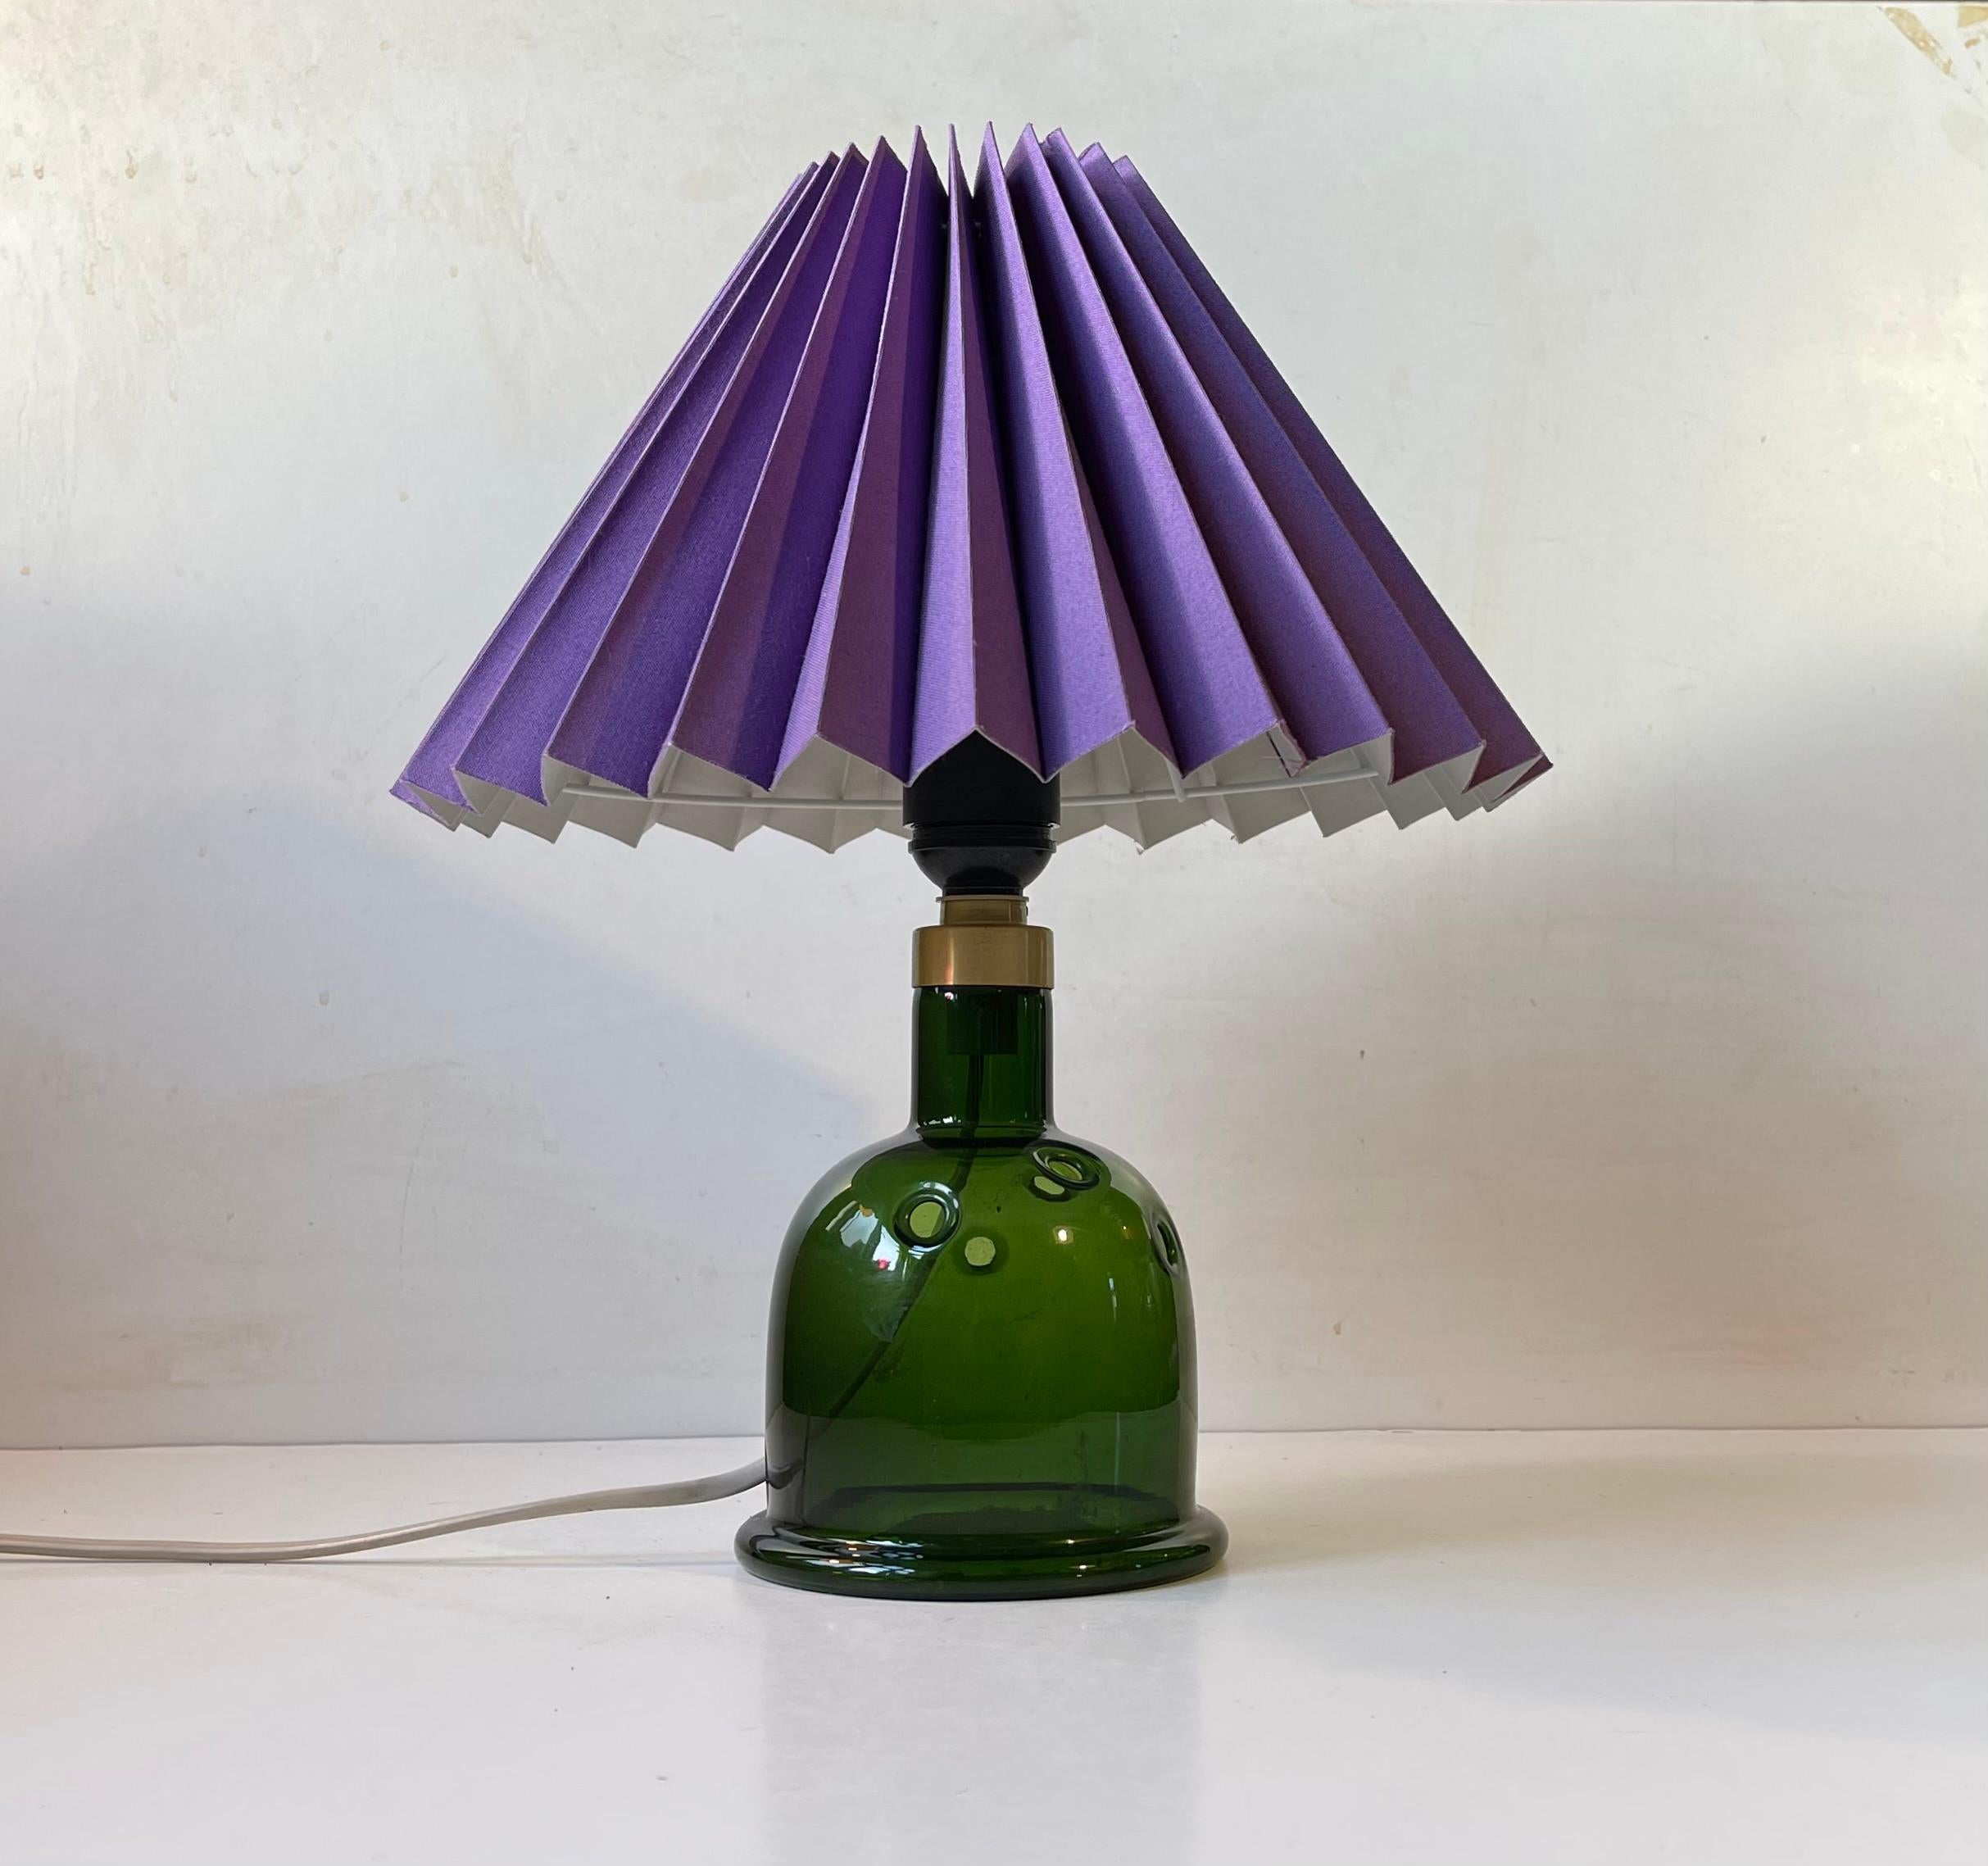 Lampe de table en verre soufflé vert foncé, conçue par Michael Bang et fabriquée par Holmegaard au Danemark à la fin des années 1970. Il s'agit de Calle. Le Label de Holmegaard est encore présent sous la base. Hauteur avec abat-jour 35 cm. Elle est